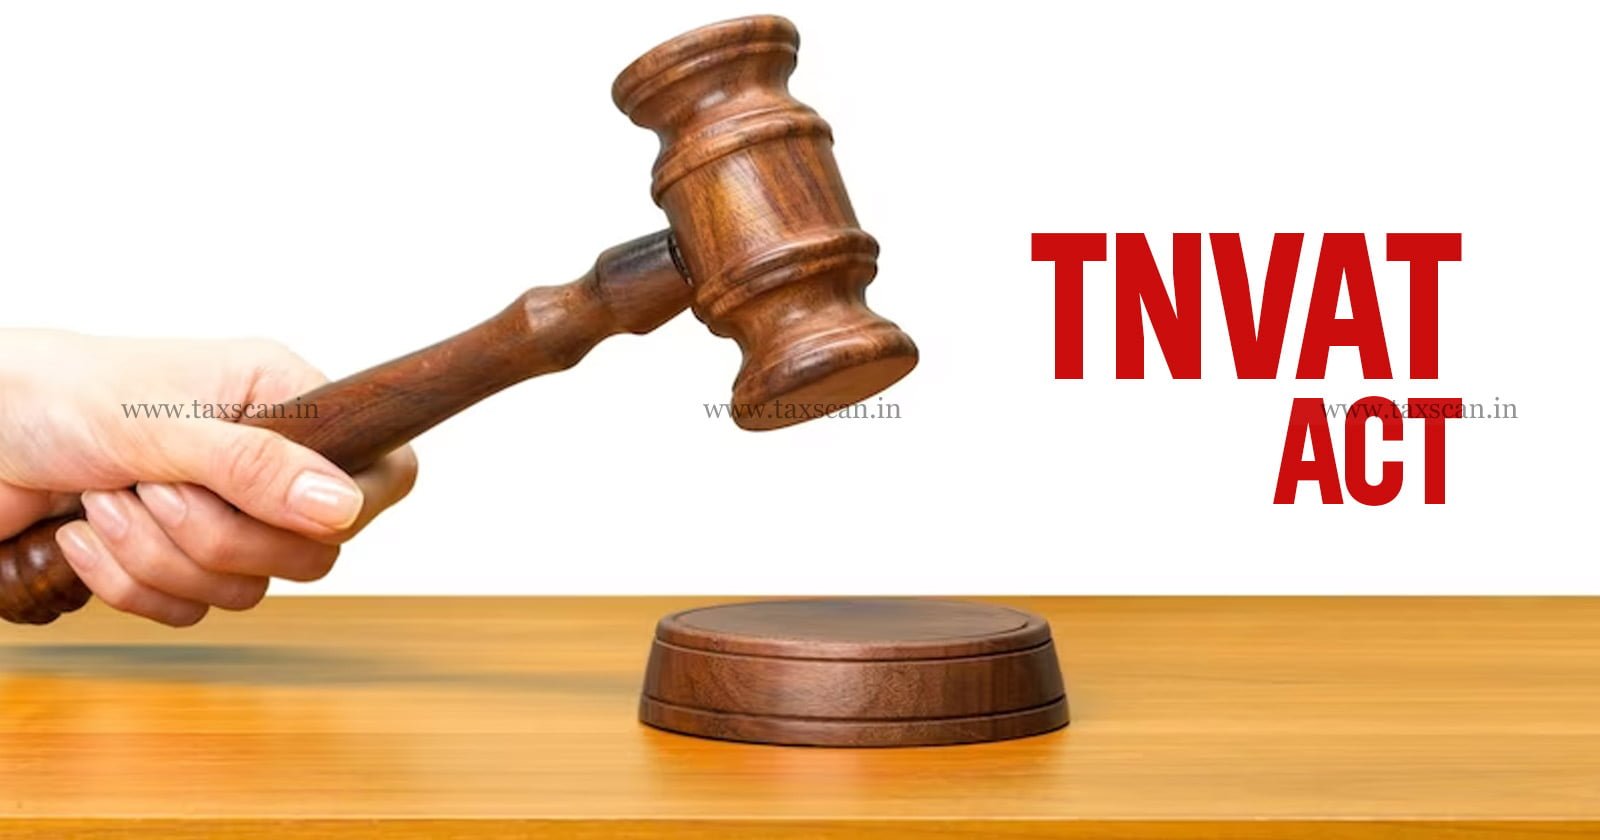 TNVAT Act - TNVAT - Final Assessment - Assessment - Assessment Order - Madras High Court - Taxscan